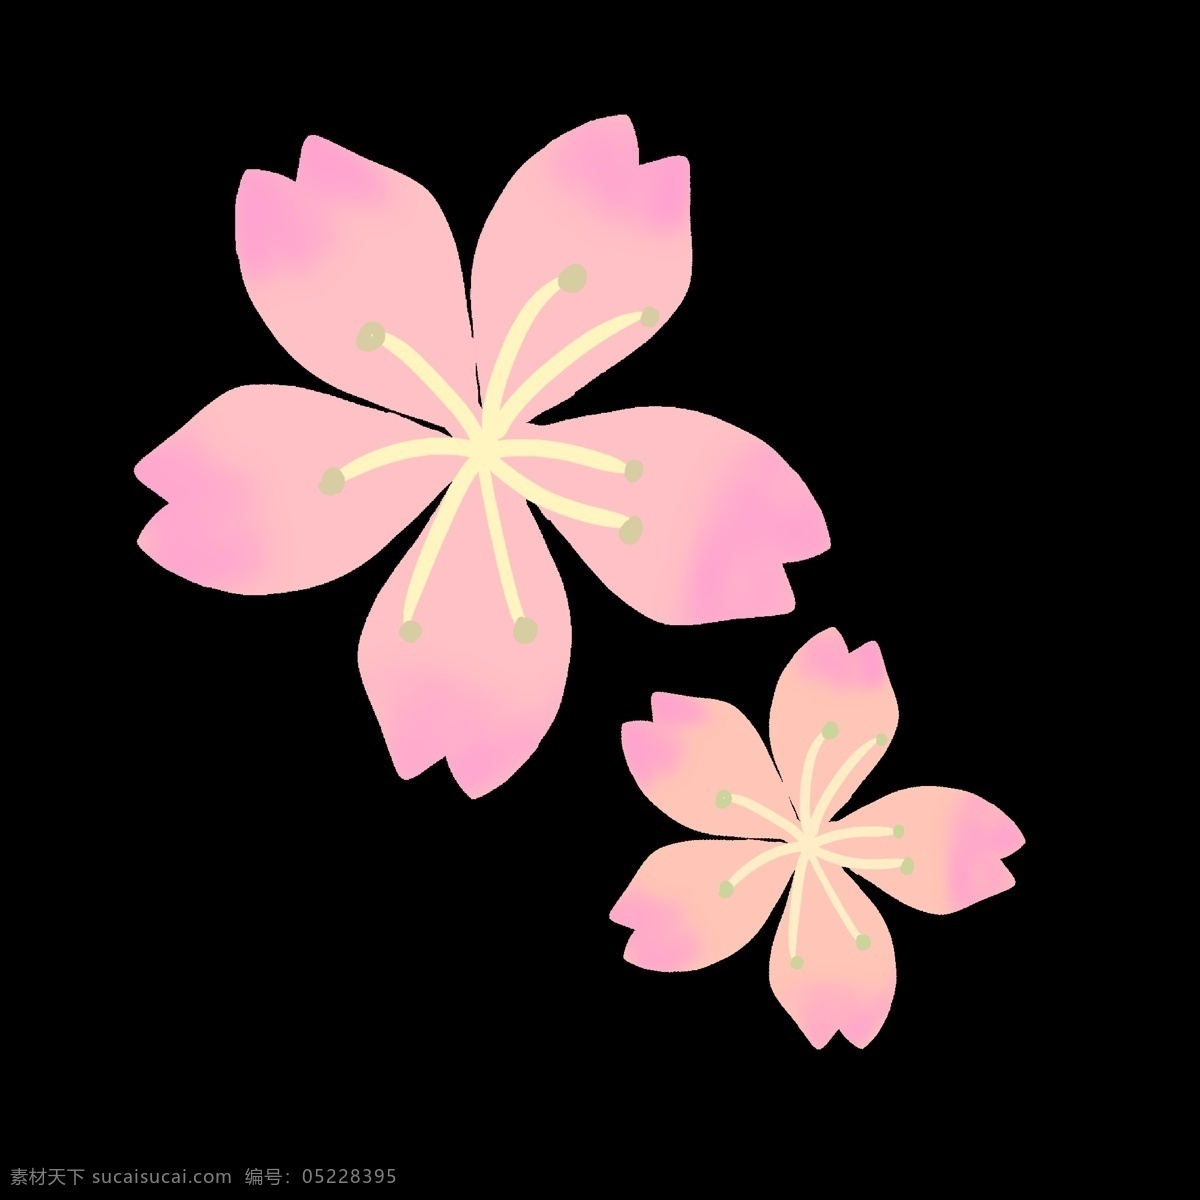 绽放 粉色 樱花 插画 粉色的樱花 美丽的樱花 绽放的樱花 卡通插画 樱花插画 花朵插画 鲜花插画